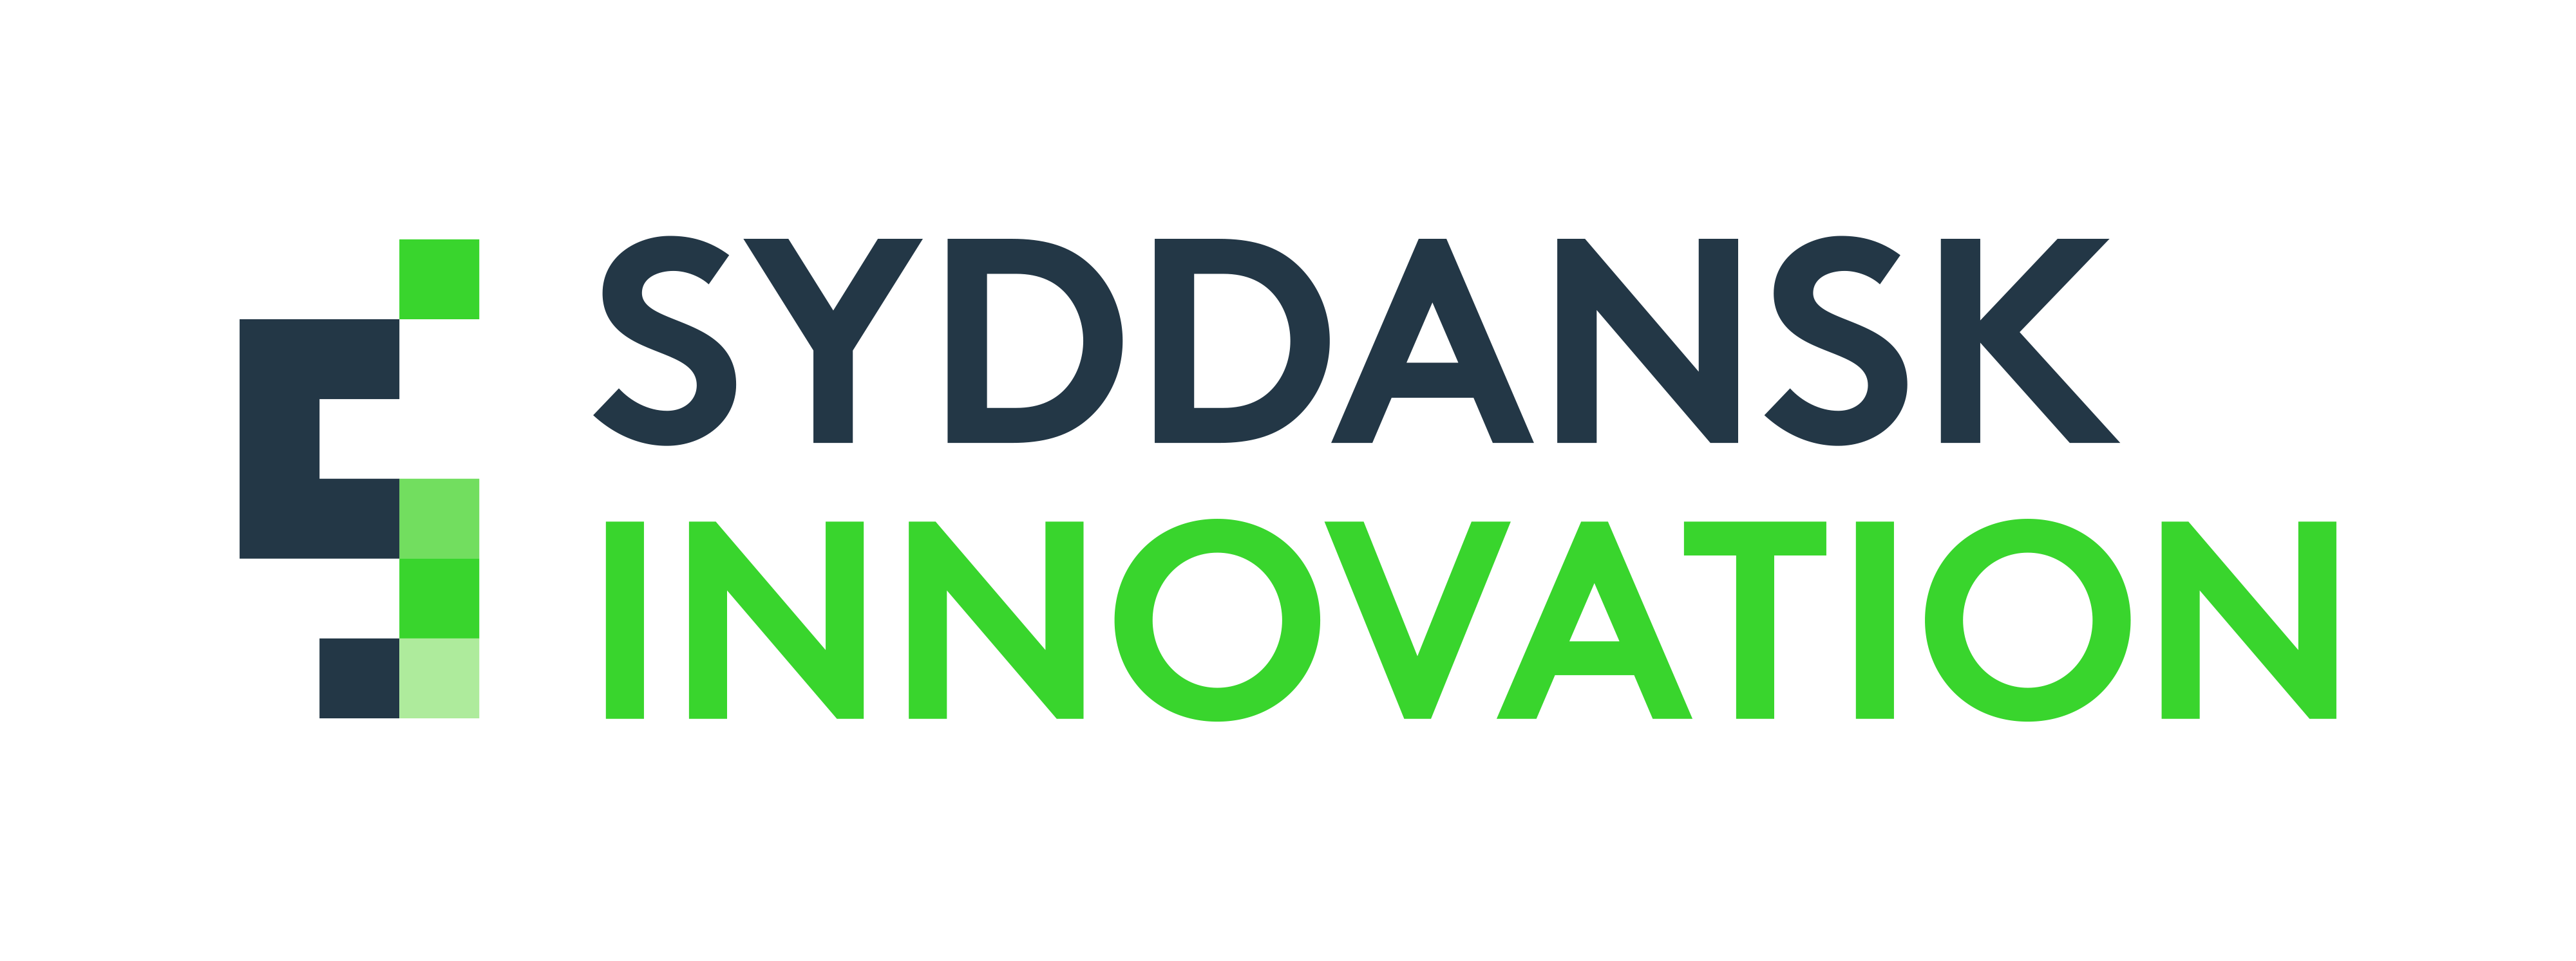 Syddansk Innovation